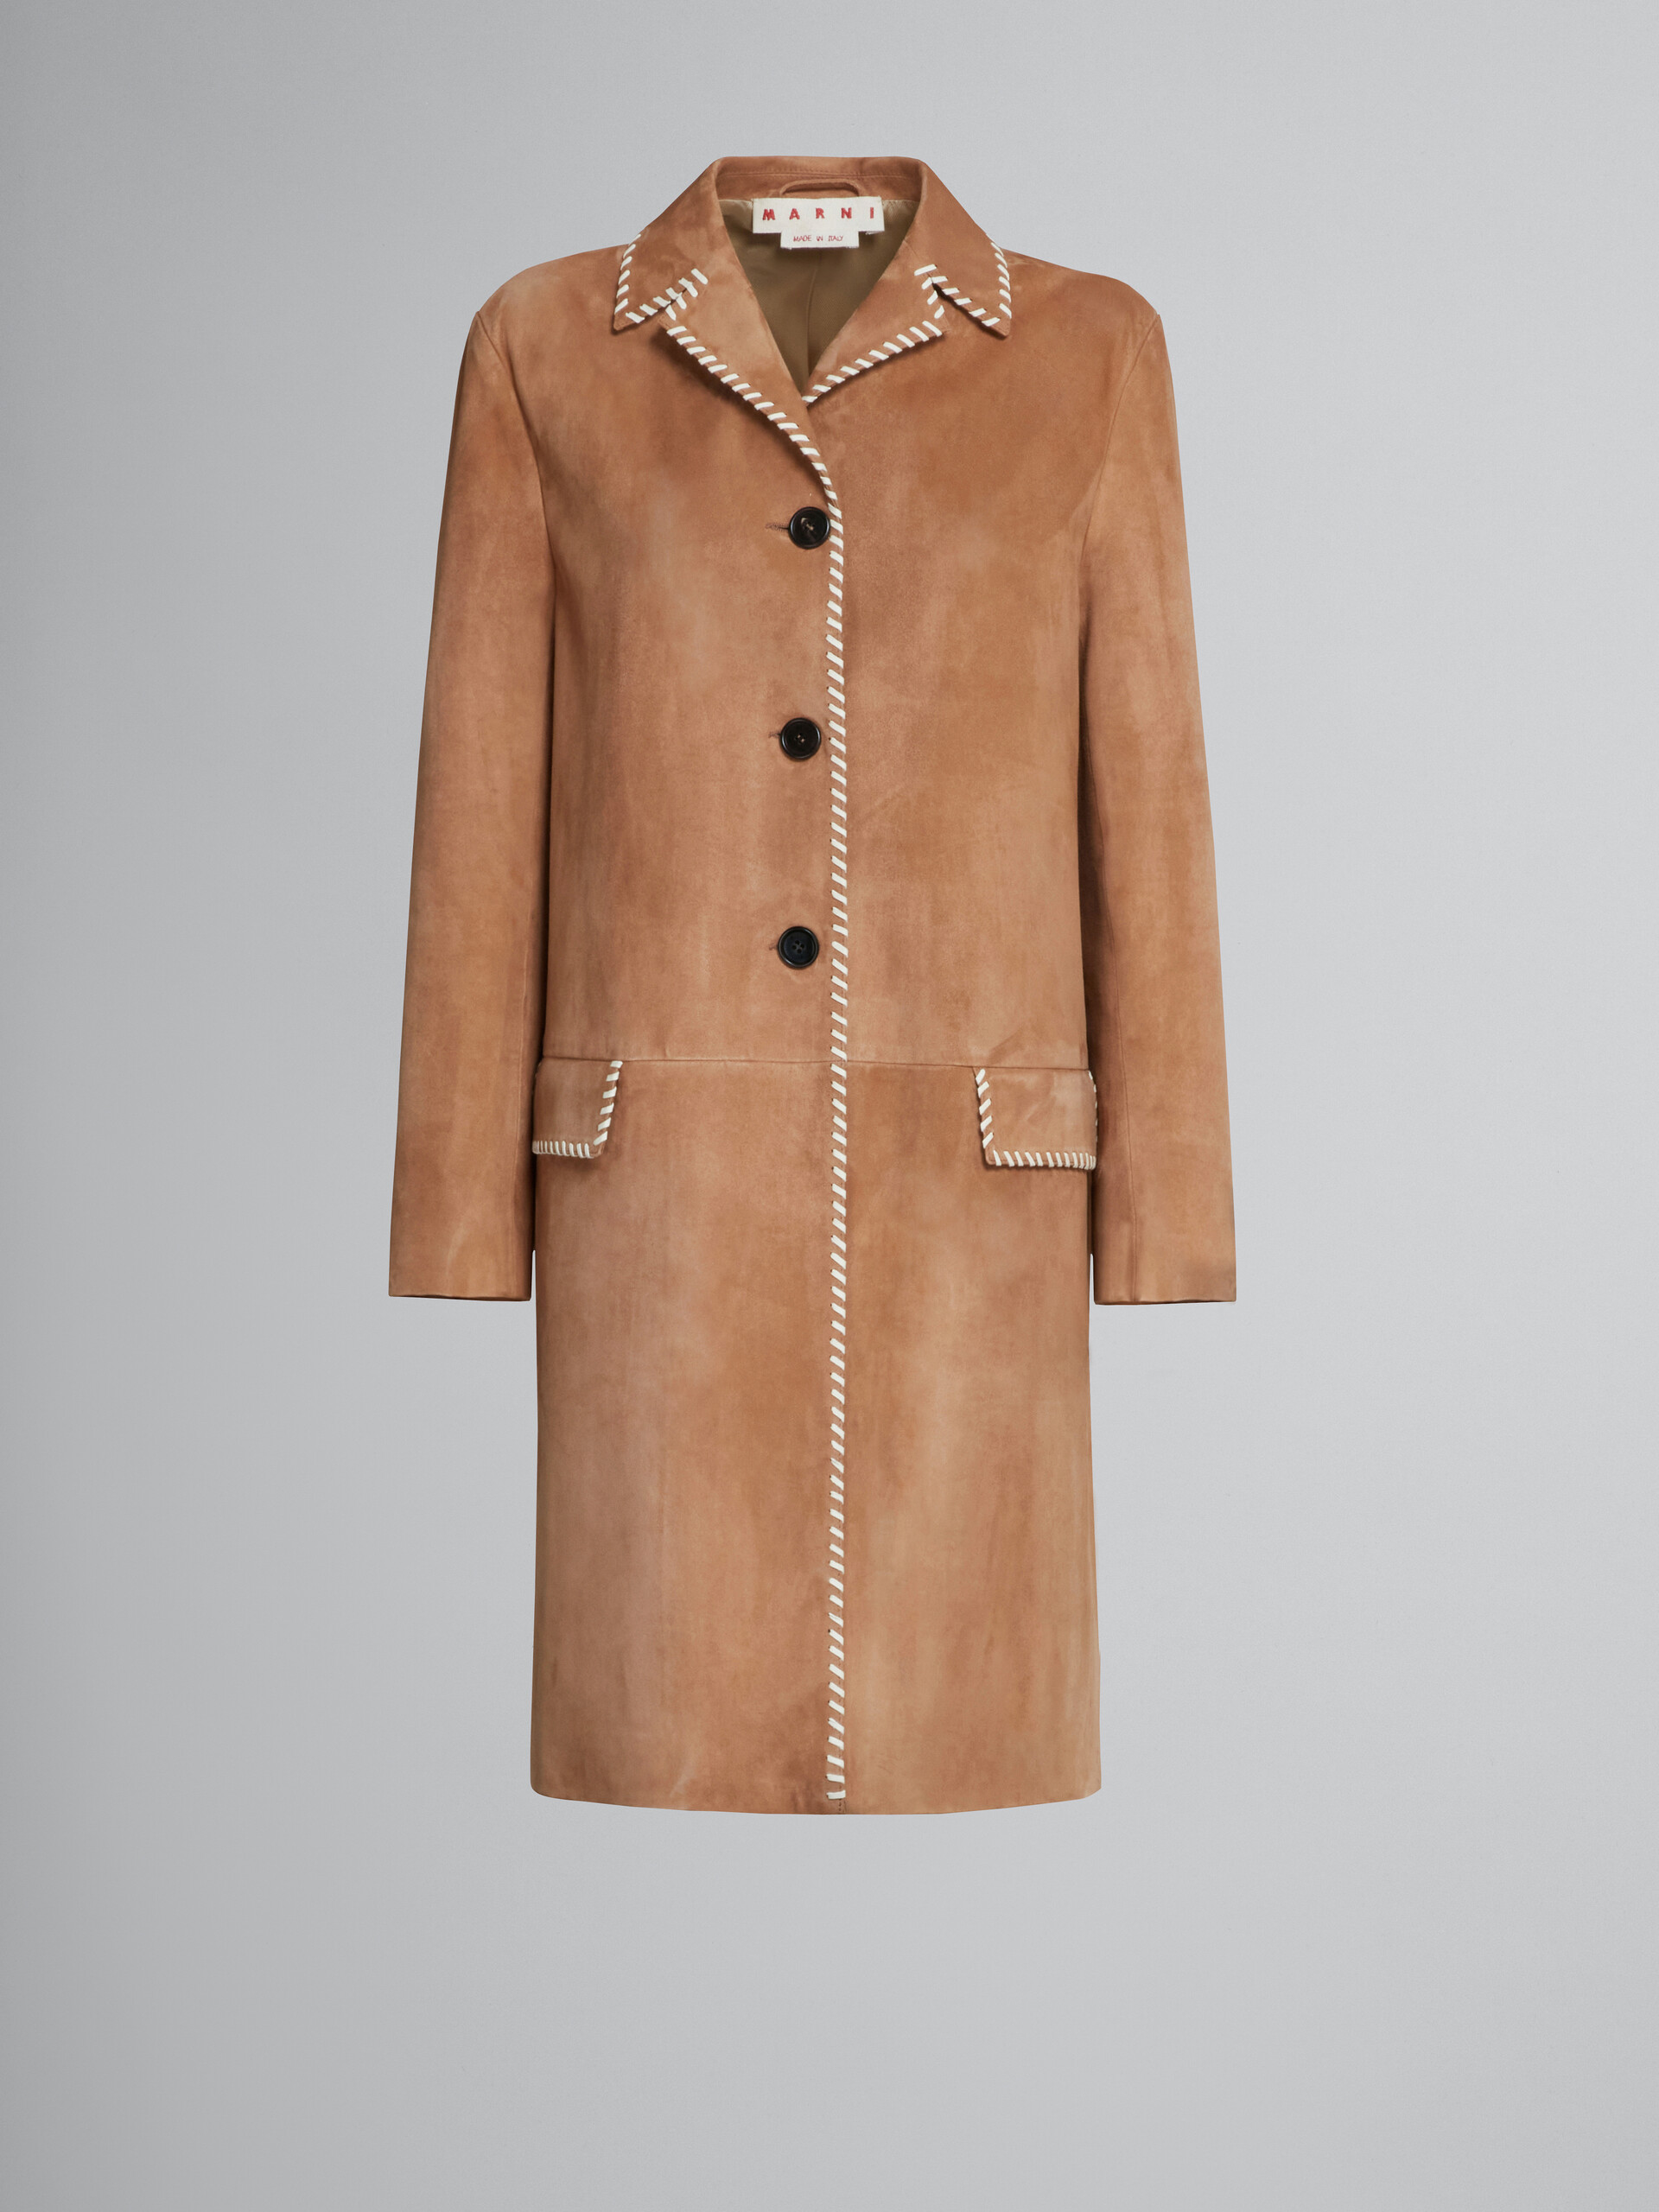 Manteau en daim marron avec surpiqûres en nappa - Vestes - Image 1